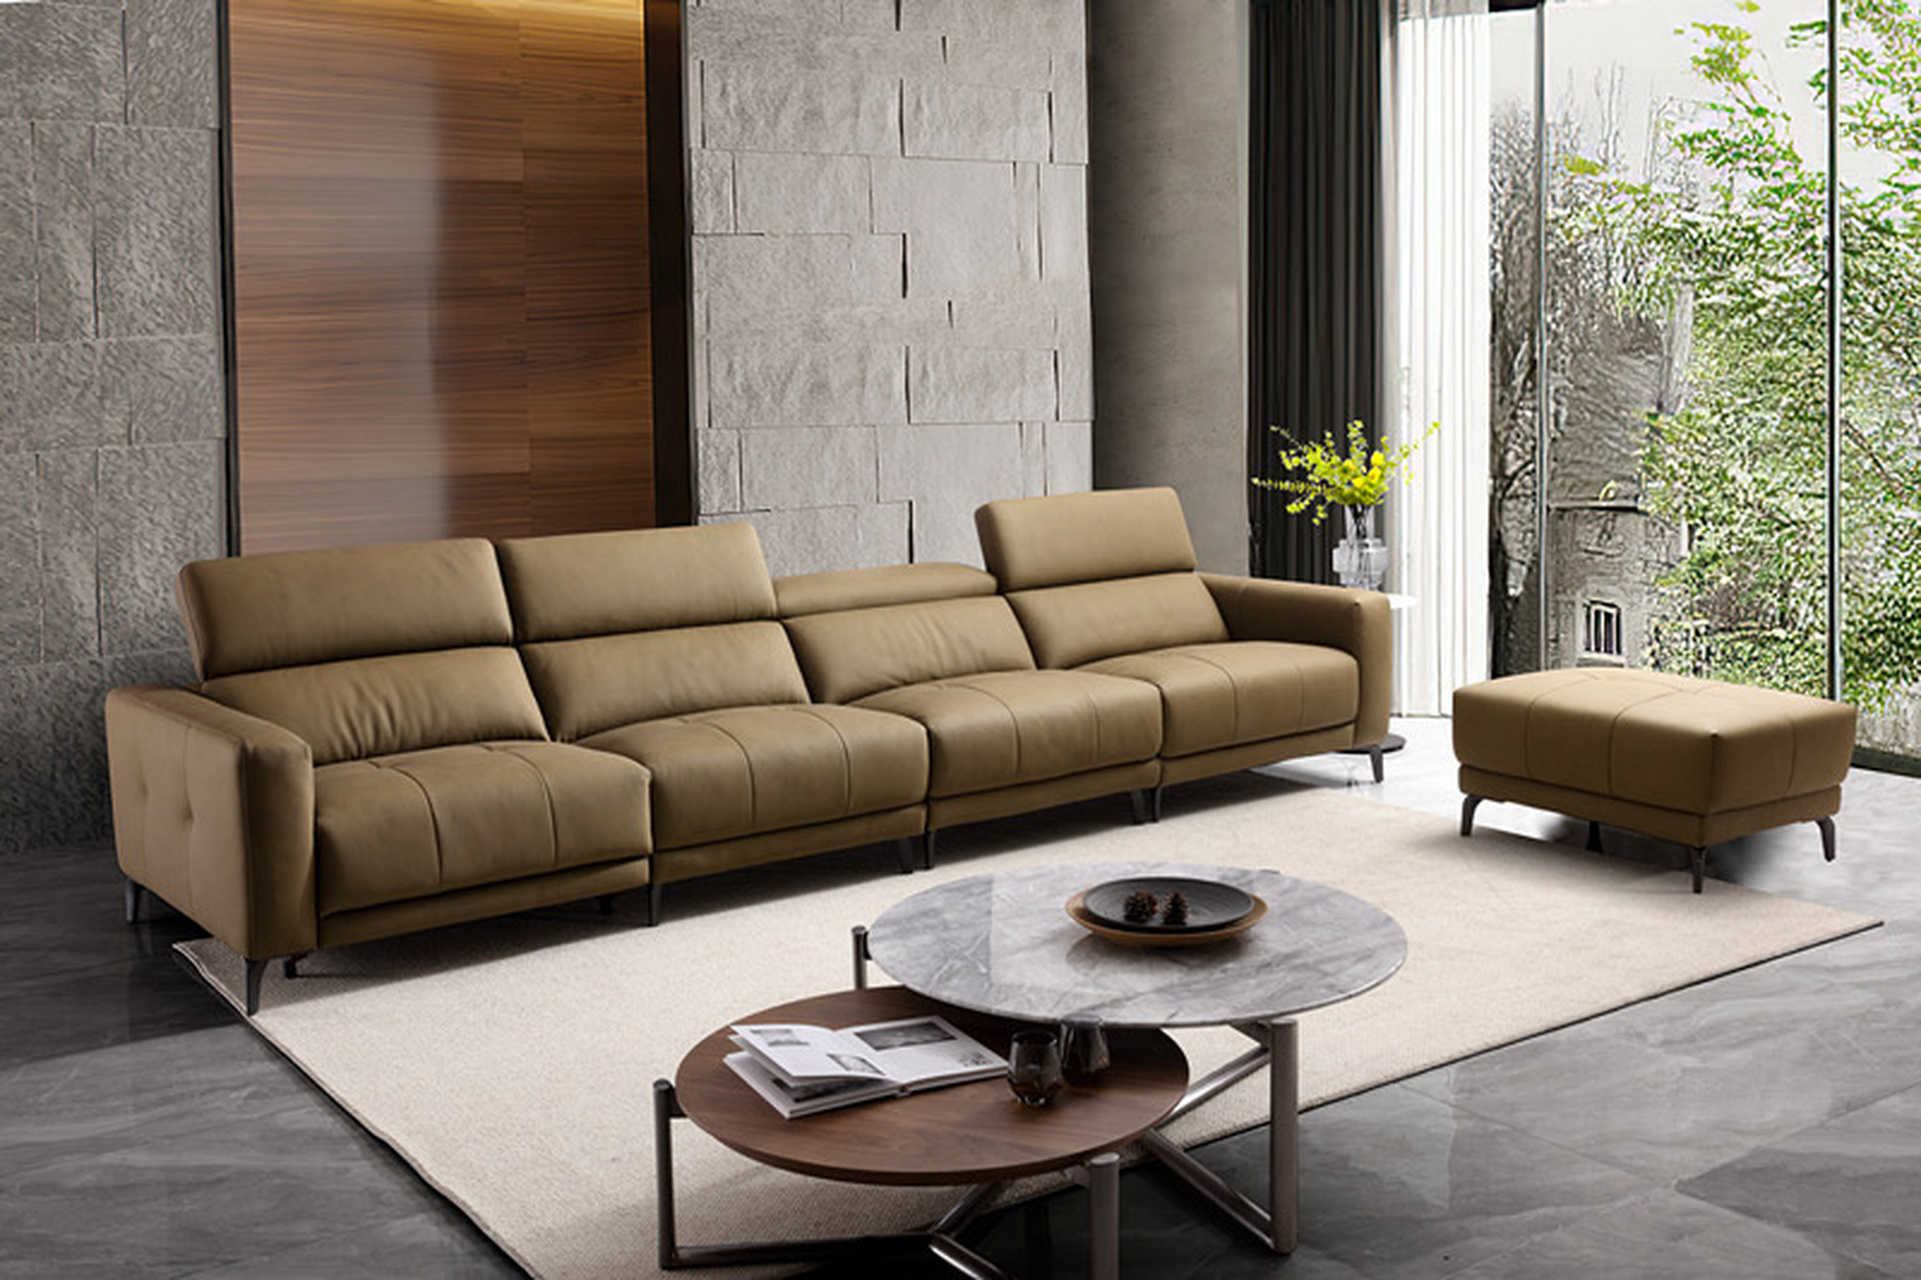 琪辉家具,琪辉功能家具  沙发是客厅中的灵魂,它承载着装饰的主色调